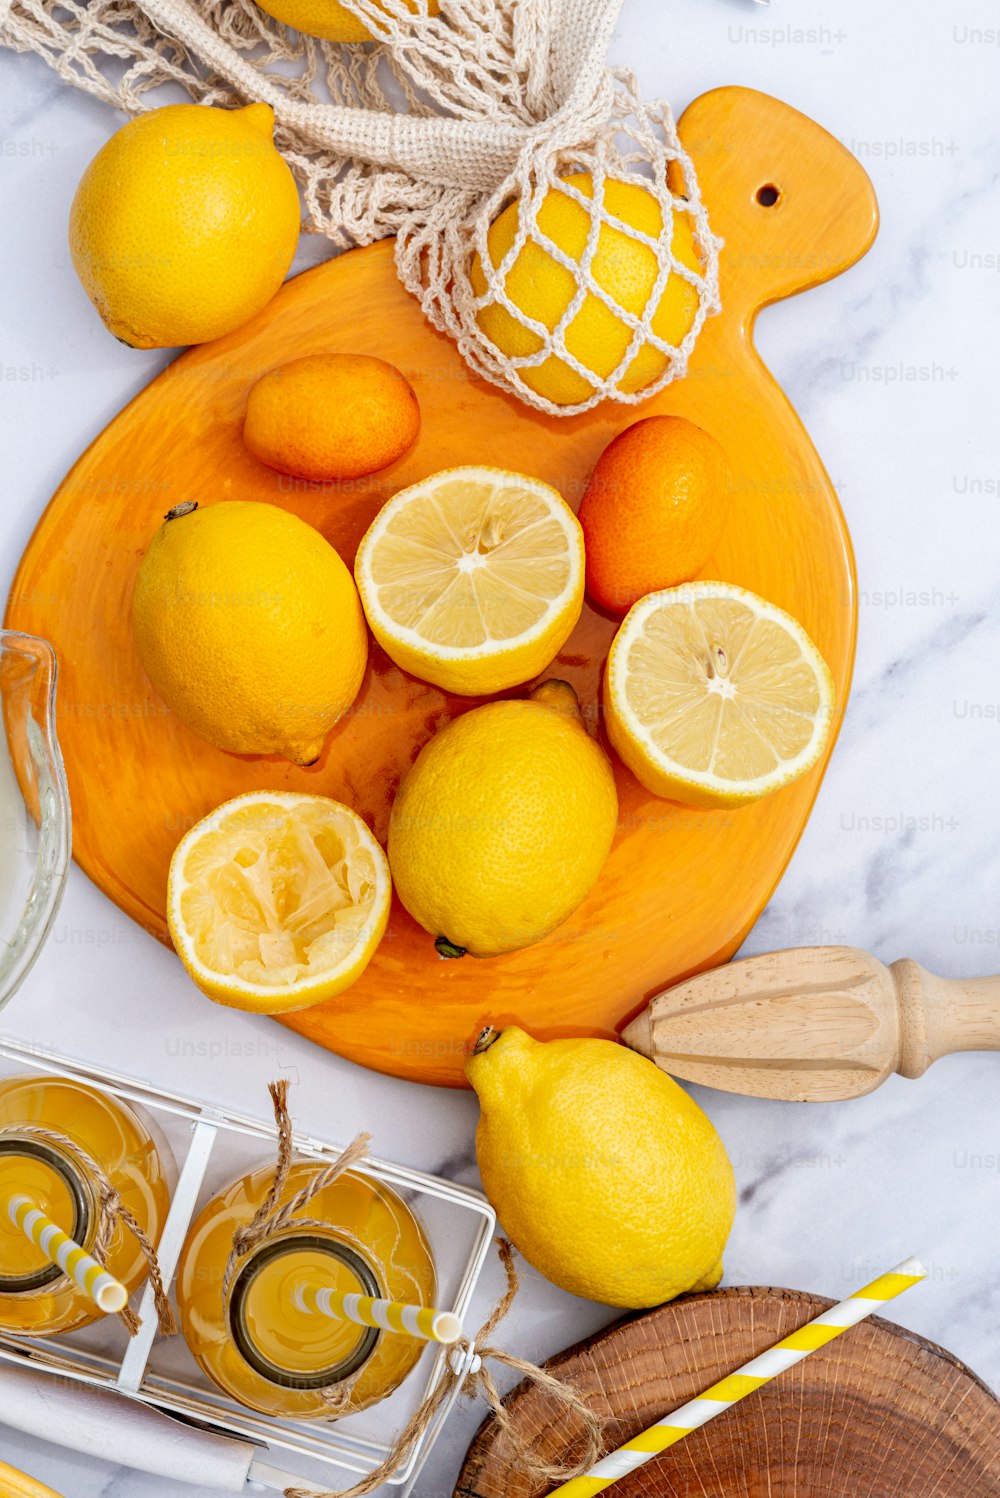 테이블 위에 놓인 레몬과 오렌지 한 접시